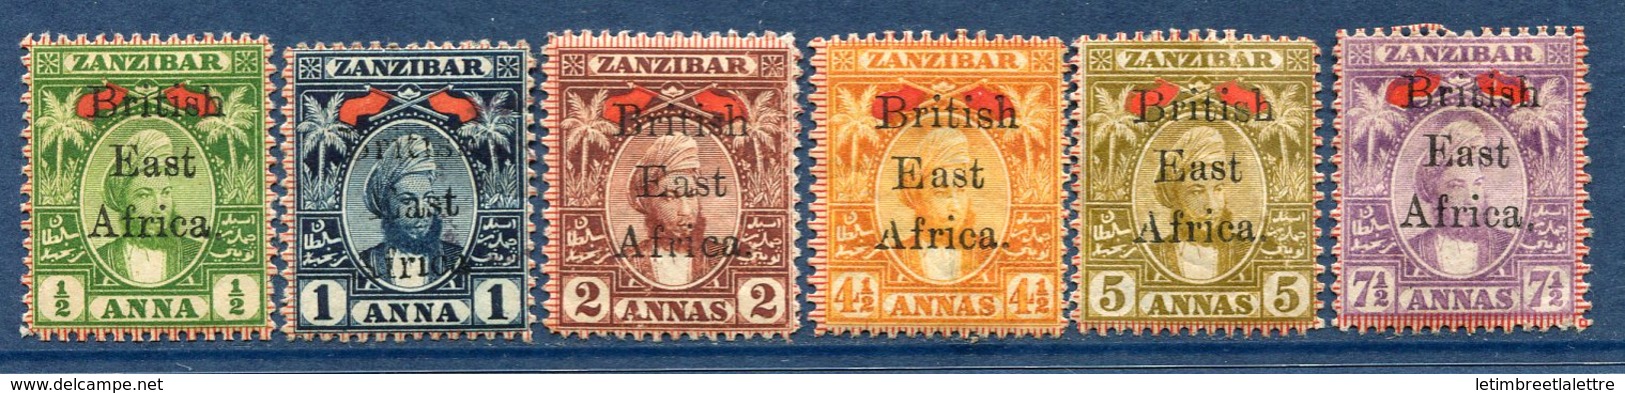 ⭐ Afrique Orientale Britannique - YT N° 84 à 89 * - Neuf Avec Charnière - ( Issus De La Série N° 84 à 91 ) ⭐ - Afrique Orientale Britannique